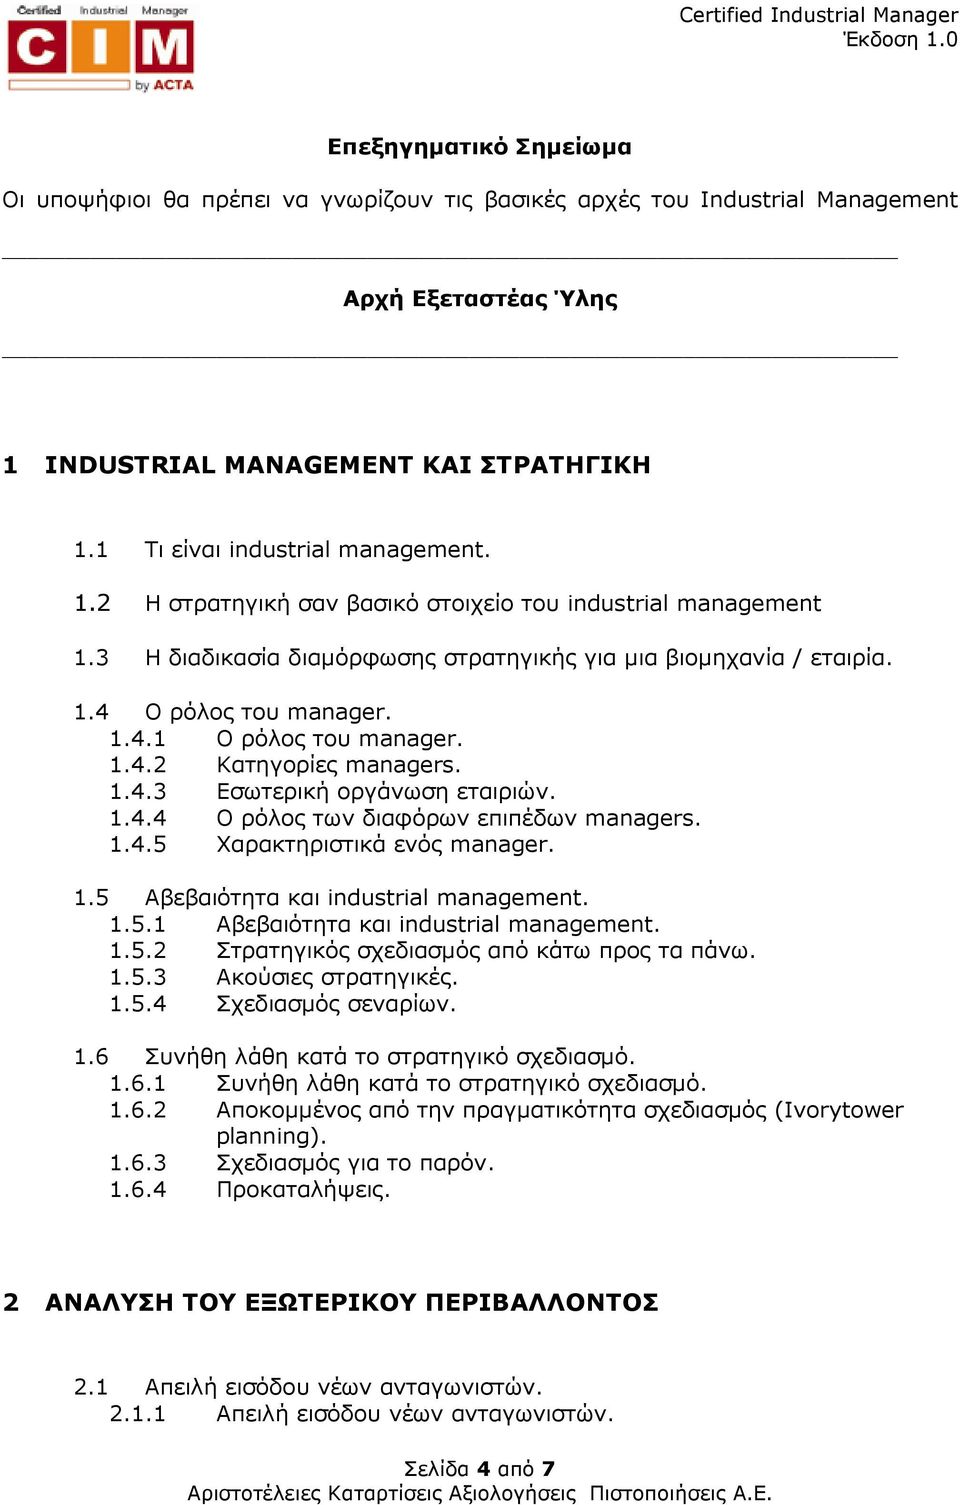 1.4.3 Εσωτερική οργάνωση εταιριών. 1.4.4 Ο ρόλος των διαφόρων επιπέδων managers. 1.4.5 Χαρακτηριστικά ενός manager. 1.5 Αβεβαιότητα και industrial management. 1.5.1 Αβεβαιότητα και industrial management.